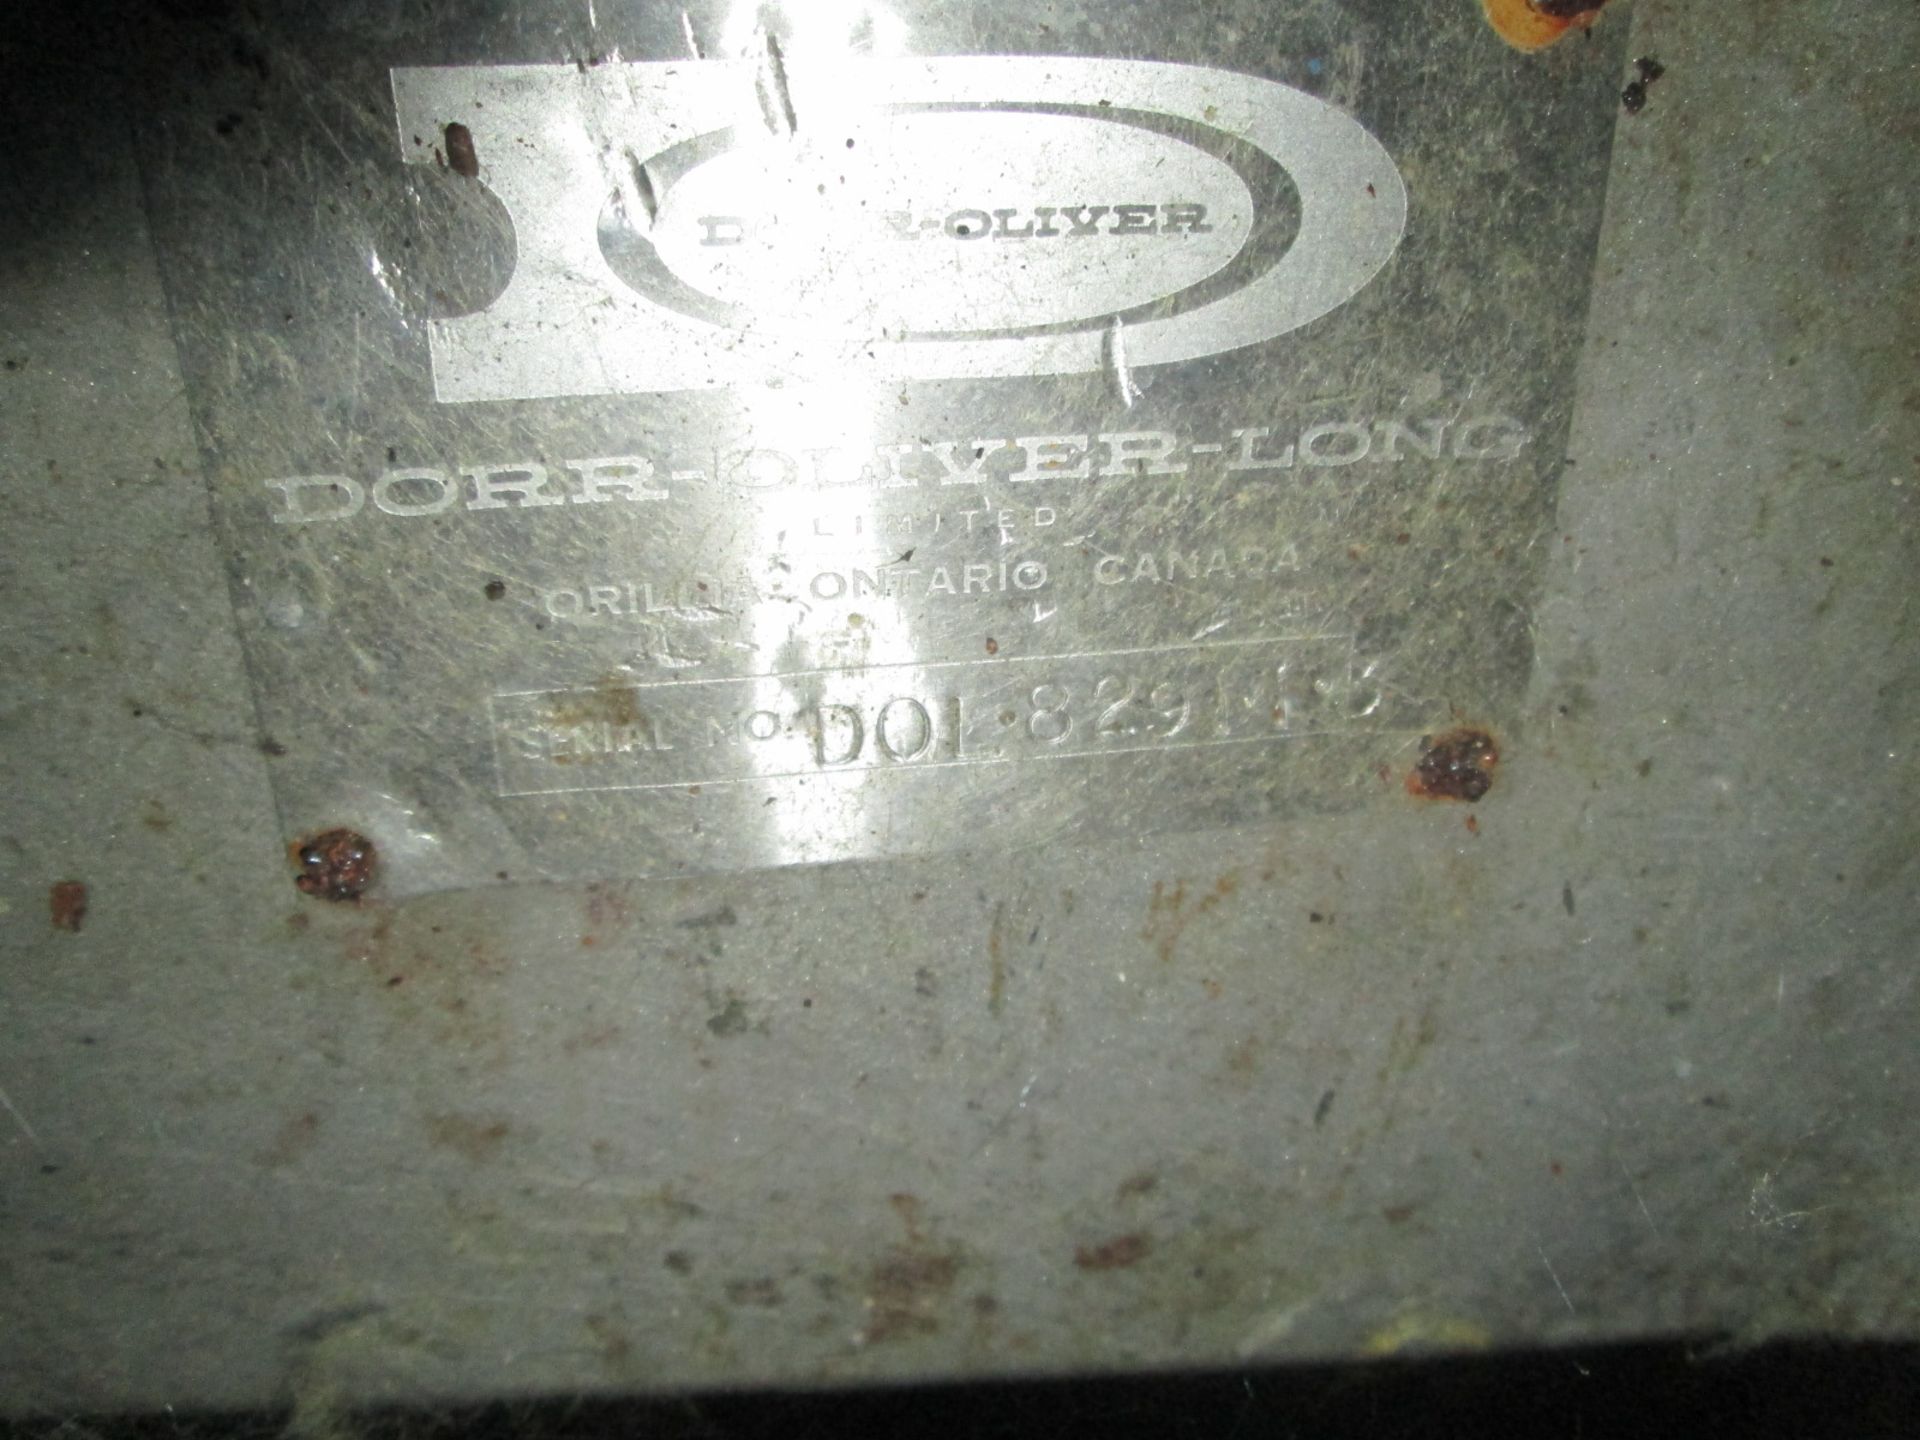 Dorr-Oliver Dorr Clone Serial No. DOL-829113 - Image 3 of 5